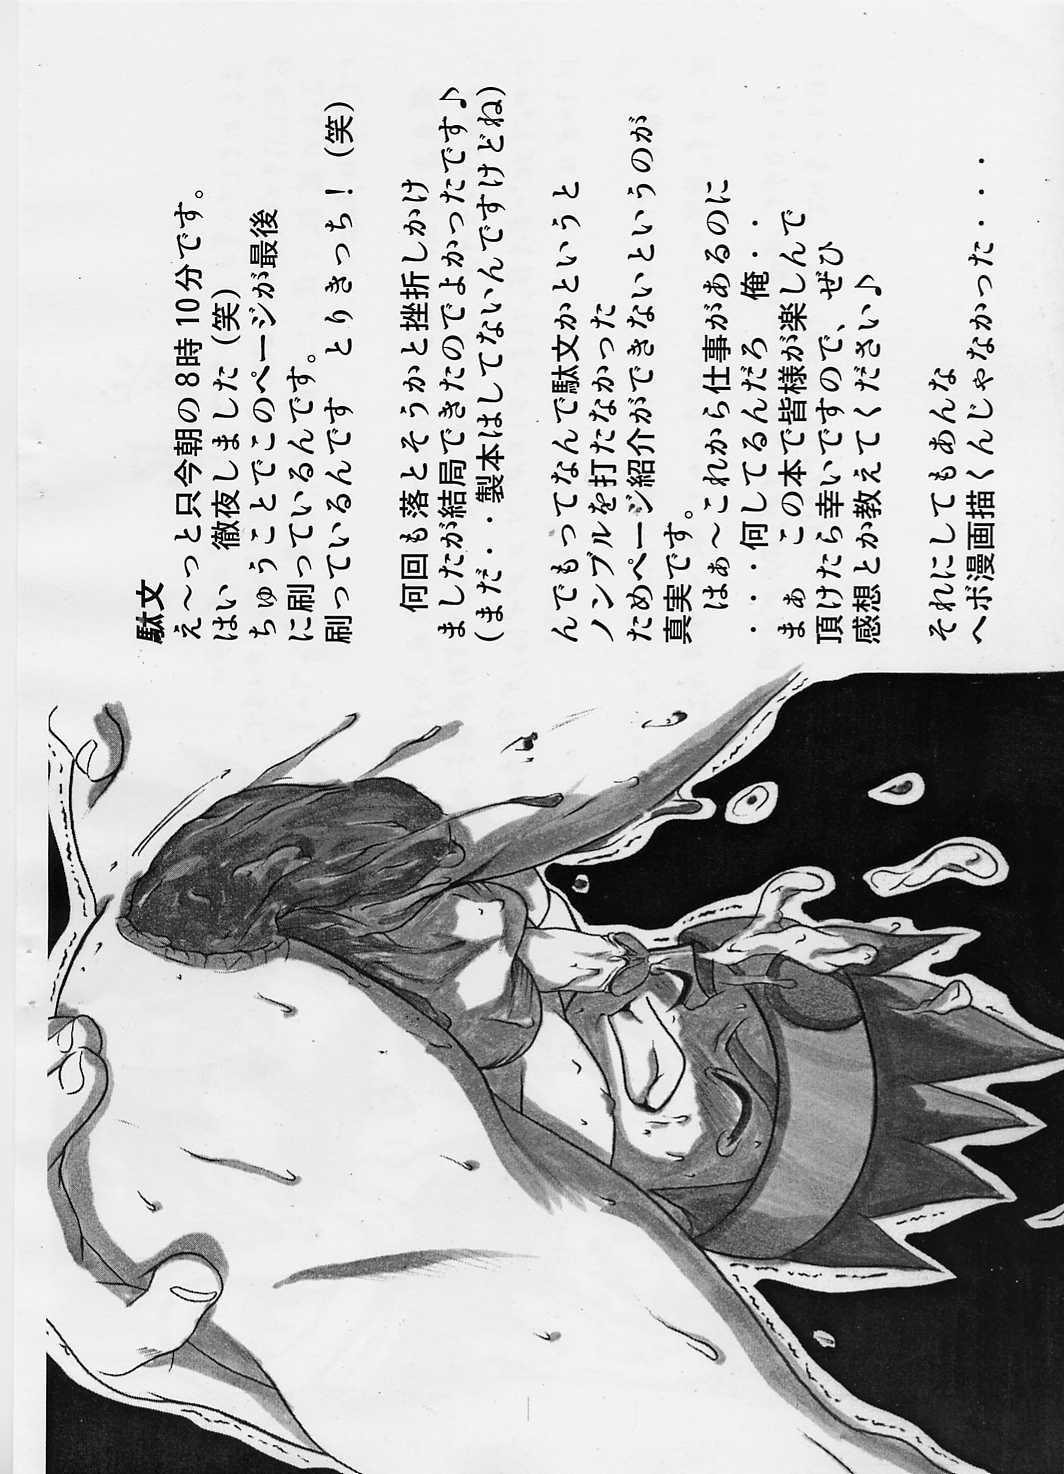 Bra Shotakatsu VOL 1 - Naruto Hunter x hunter Bakusou kyoudai lets and go Rurouni kenshin | samurai x Female - Page 3